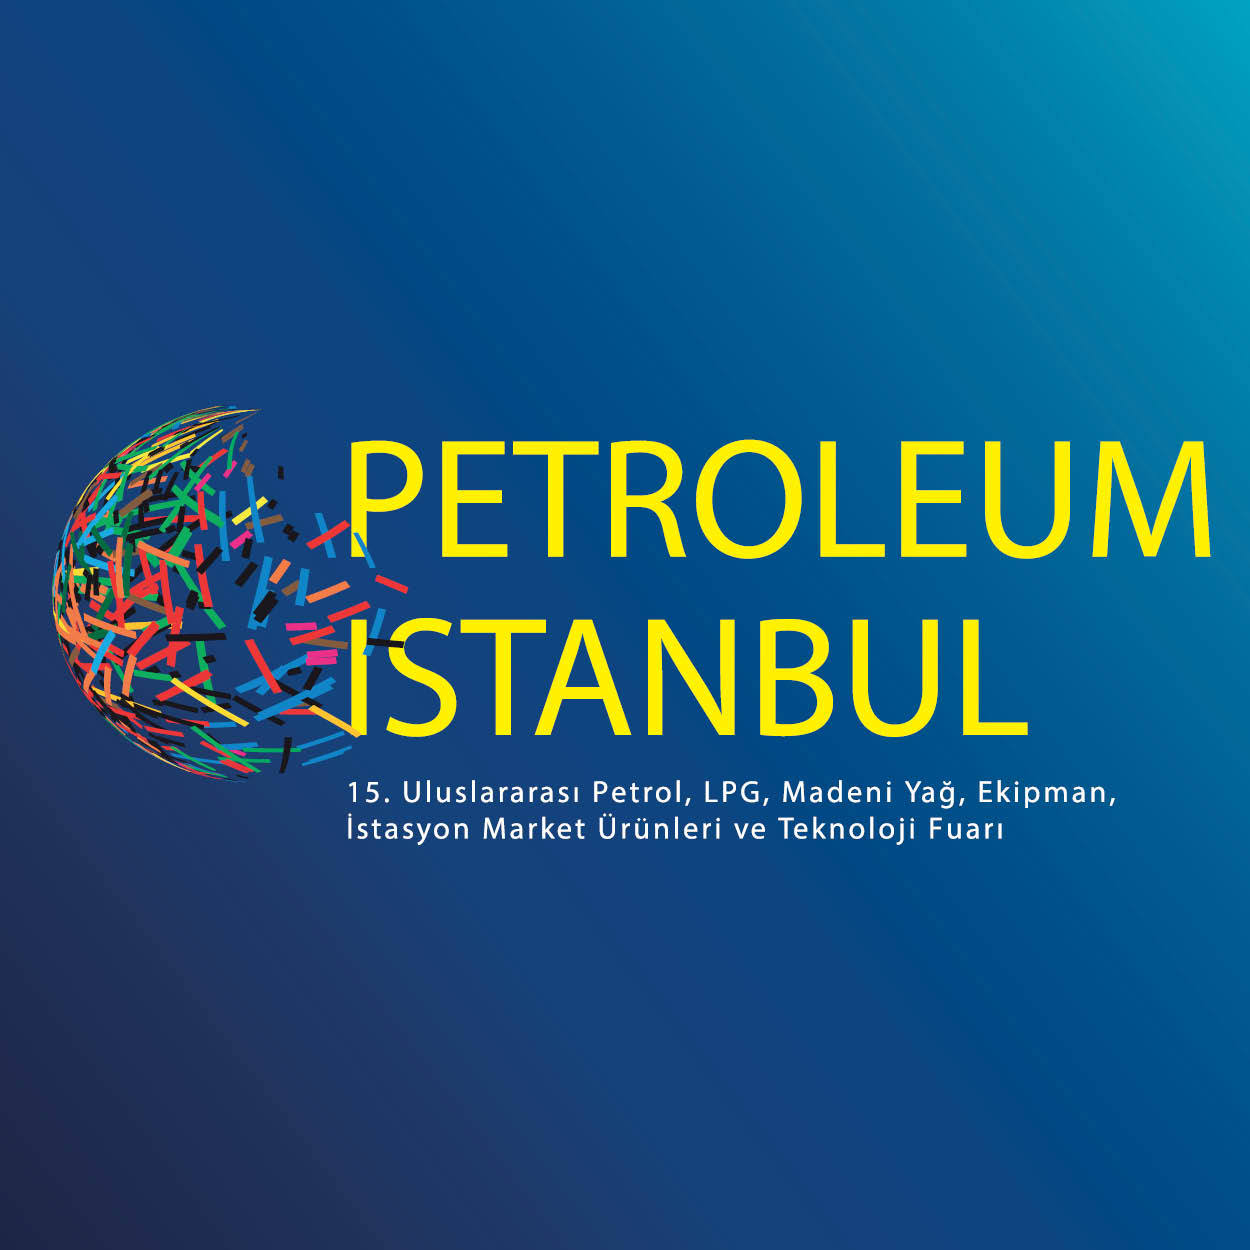 Petroleum İstanbul 15.Uluslararası Petrol, LPG, Madeni Yağ, Ekipman ve Teknoloji Fuarı